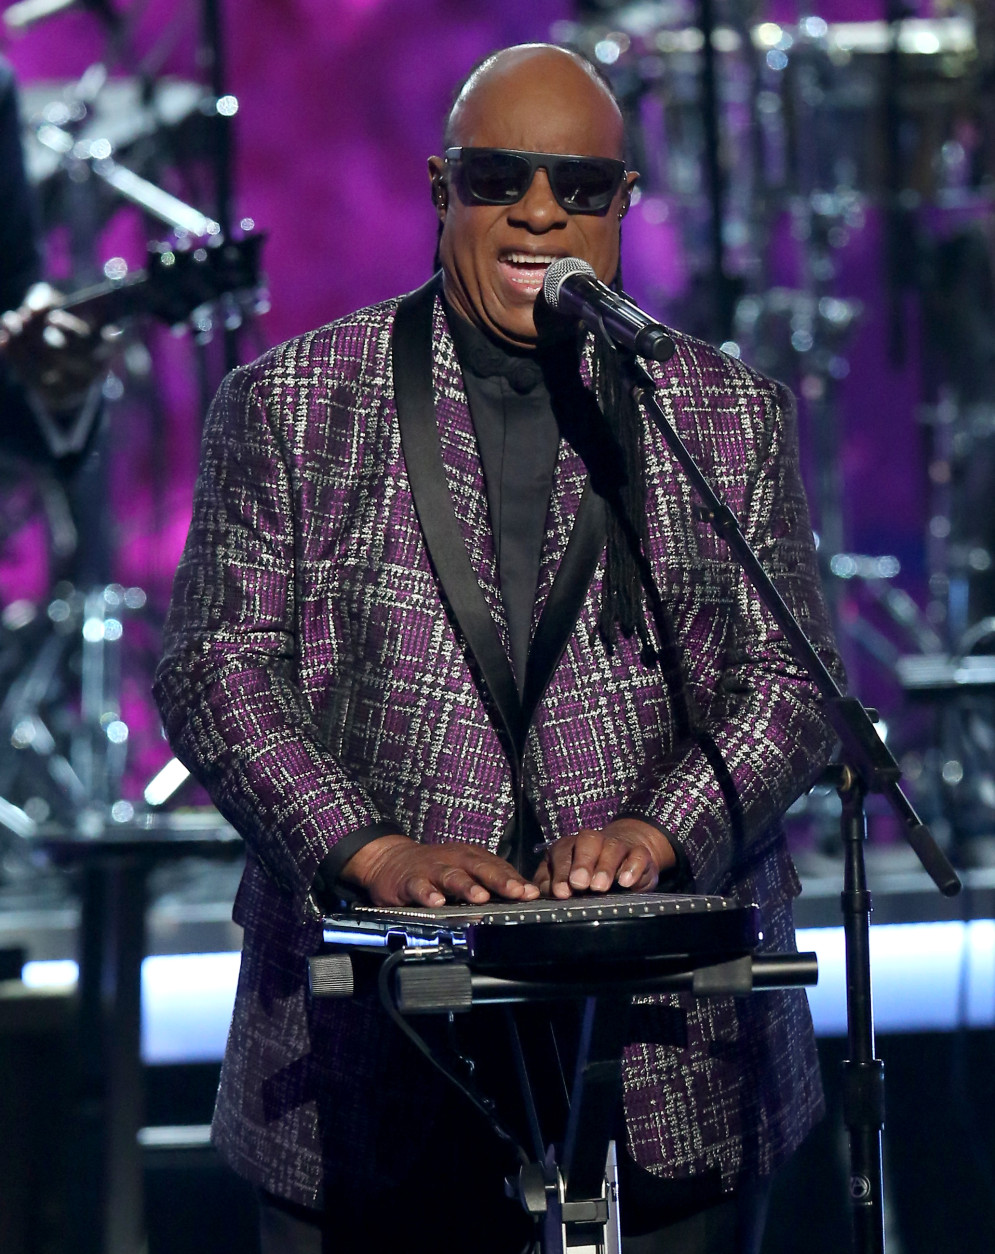 Stevie Wonder performs Take Me With U during a tribute to Prince at the BET Awards at the Microsoft Theater on Sunday, June 26, 2016, in Los Angeles. (Photo by Matt Sayles/Invision/AP)